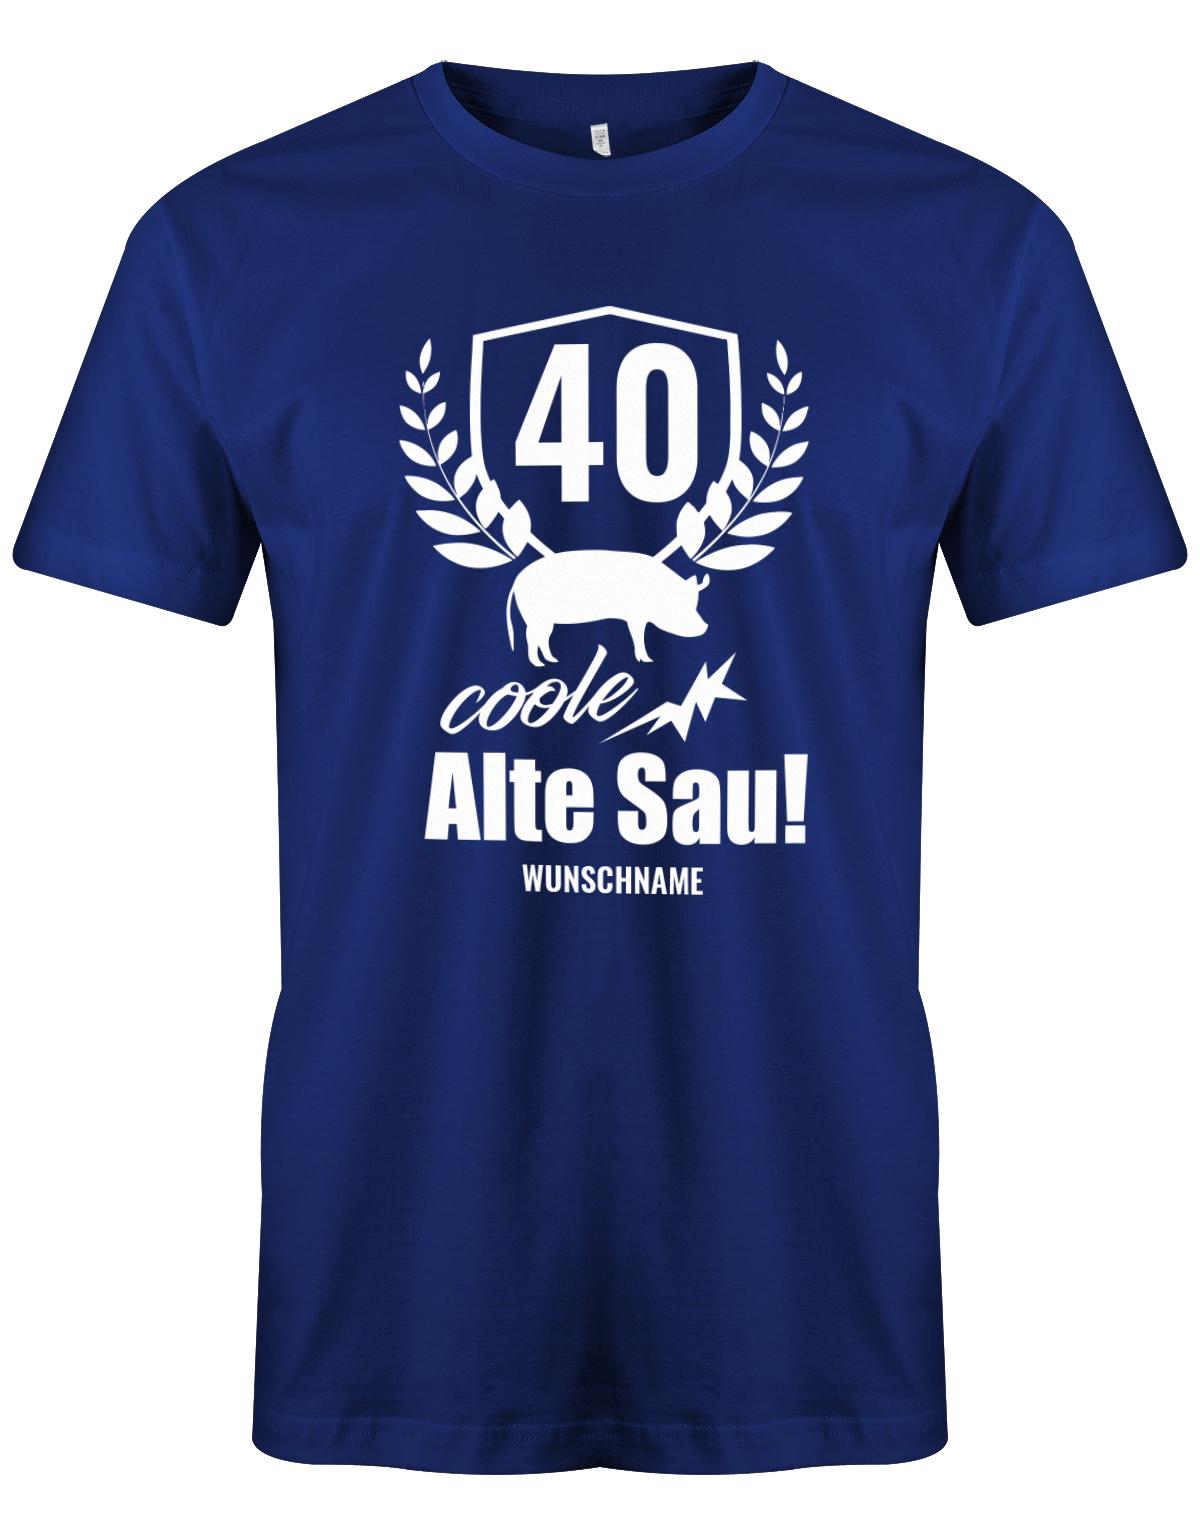 40 Alte Coole Sau Personalisiert mit Name - T-Shirt 40 Geburtstag Männer - 1983 myShirtStore Royalblau